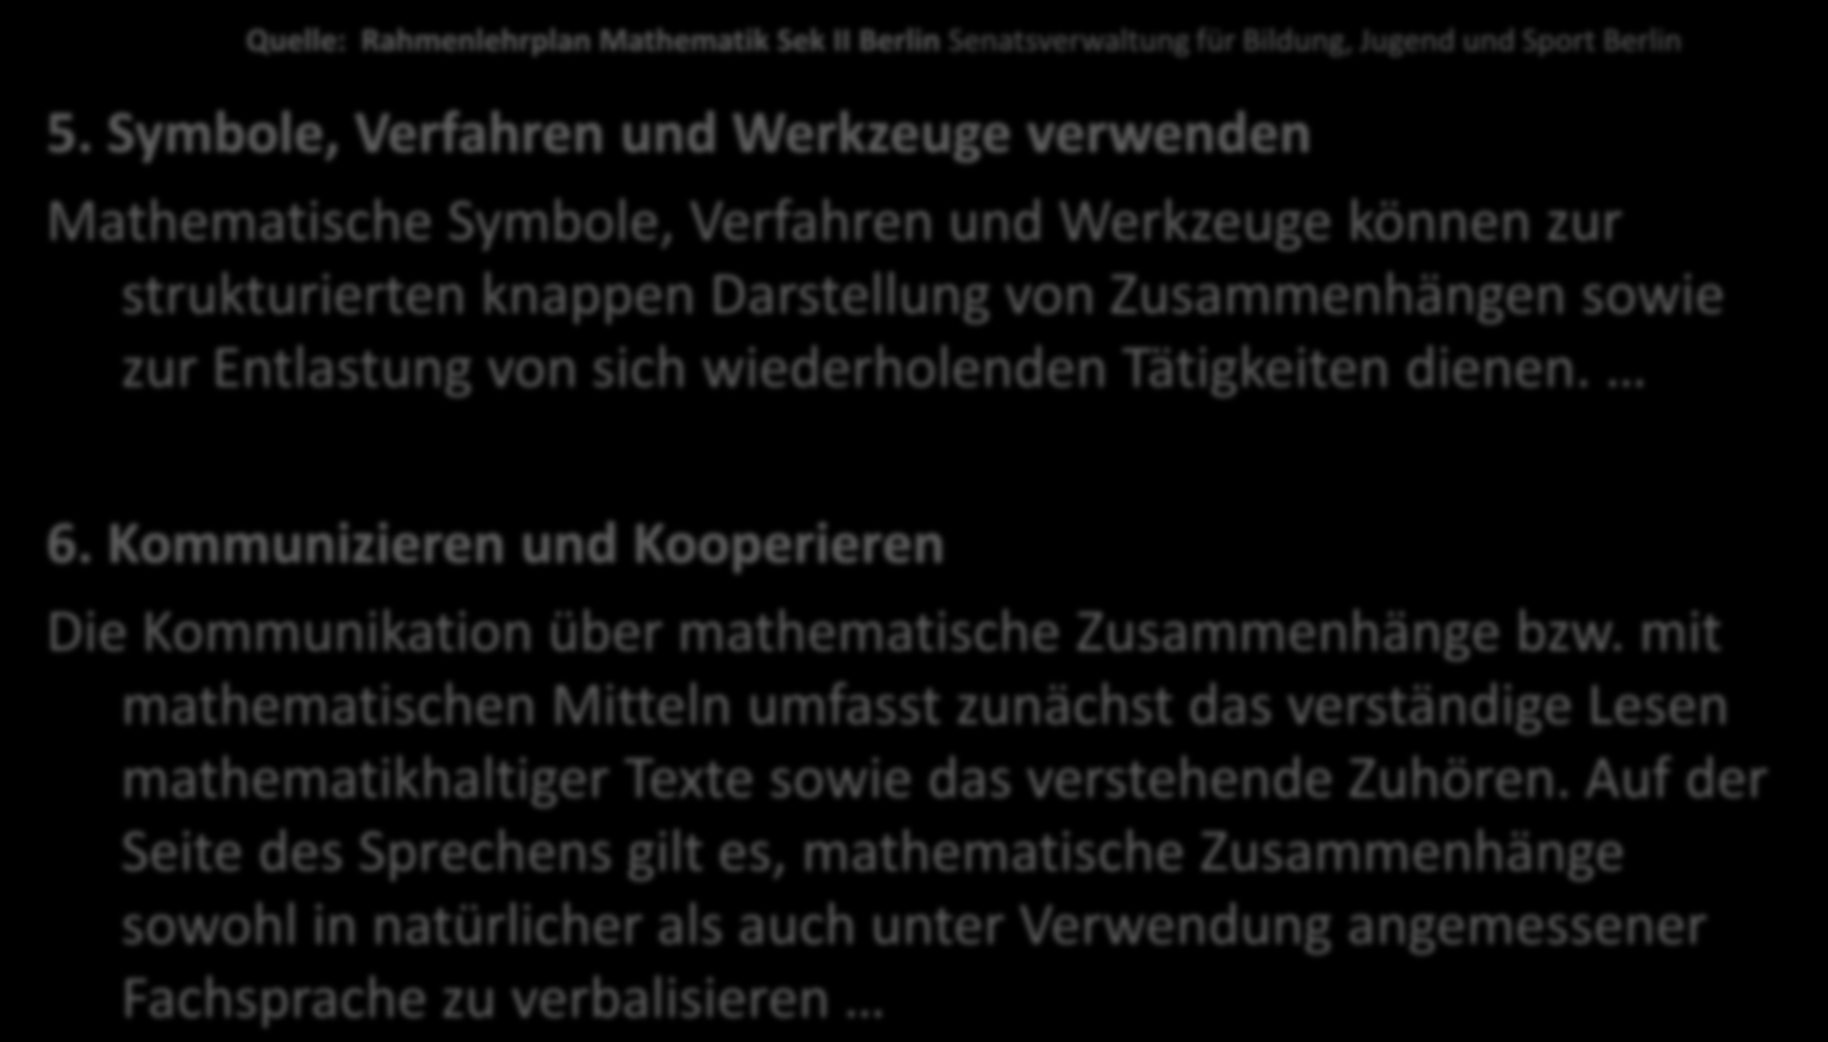 Quelle: Rahmenlehrplan Mathematik Sek II Berlin Senatsverwaltung für Bildung, Jugend und Sport Berlin 5.